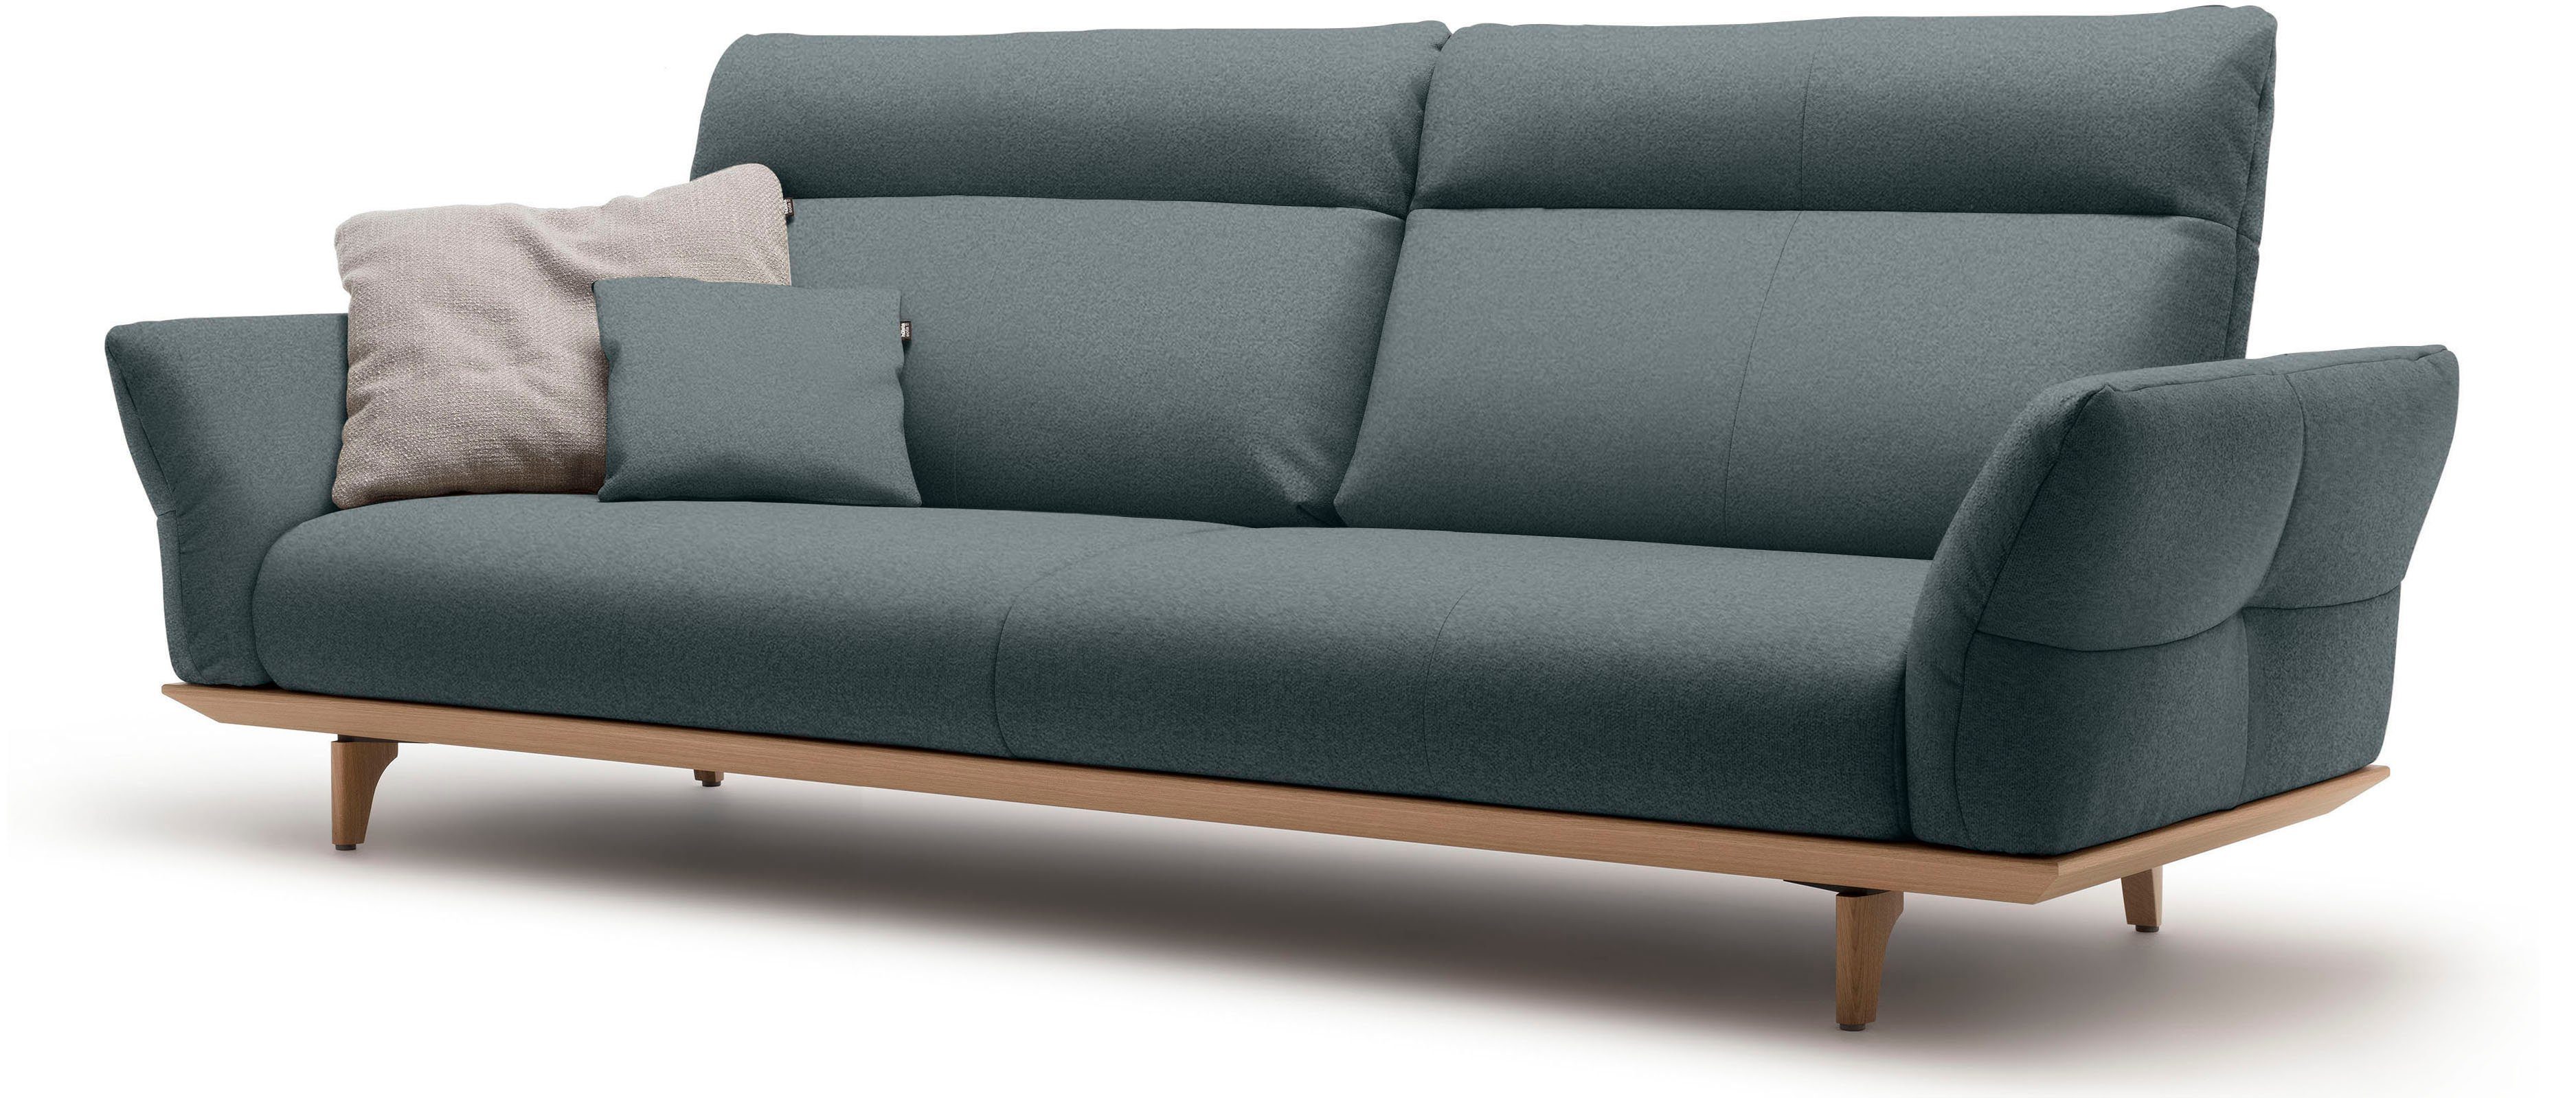 Sockel Eiche Breite in Füße Eiche, natur, 4-Sitzer 248 cm sofa hs.460, hülsta